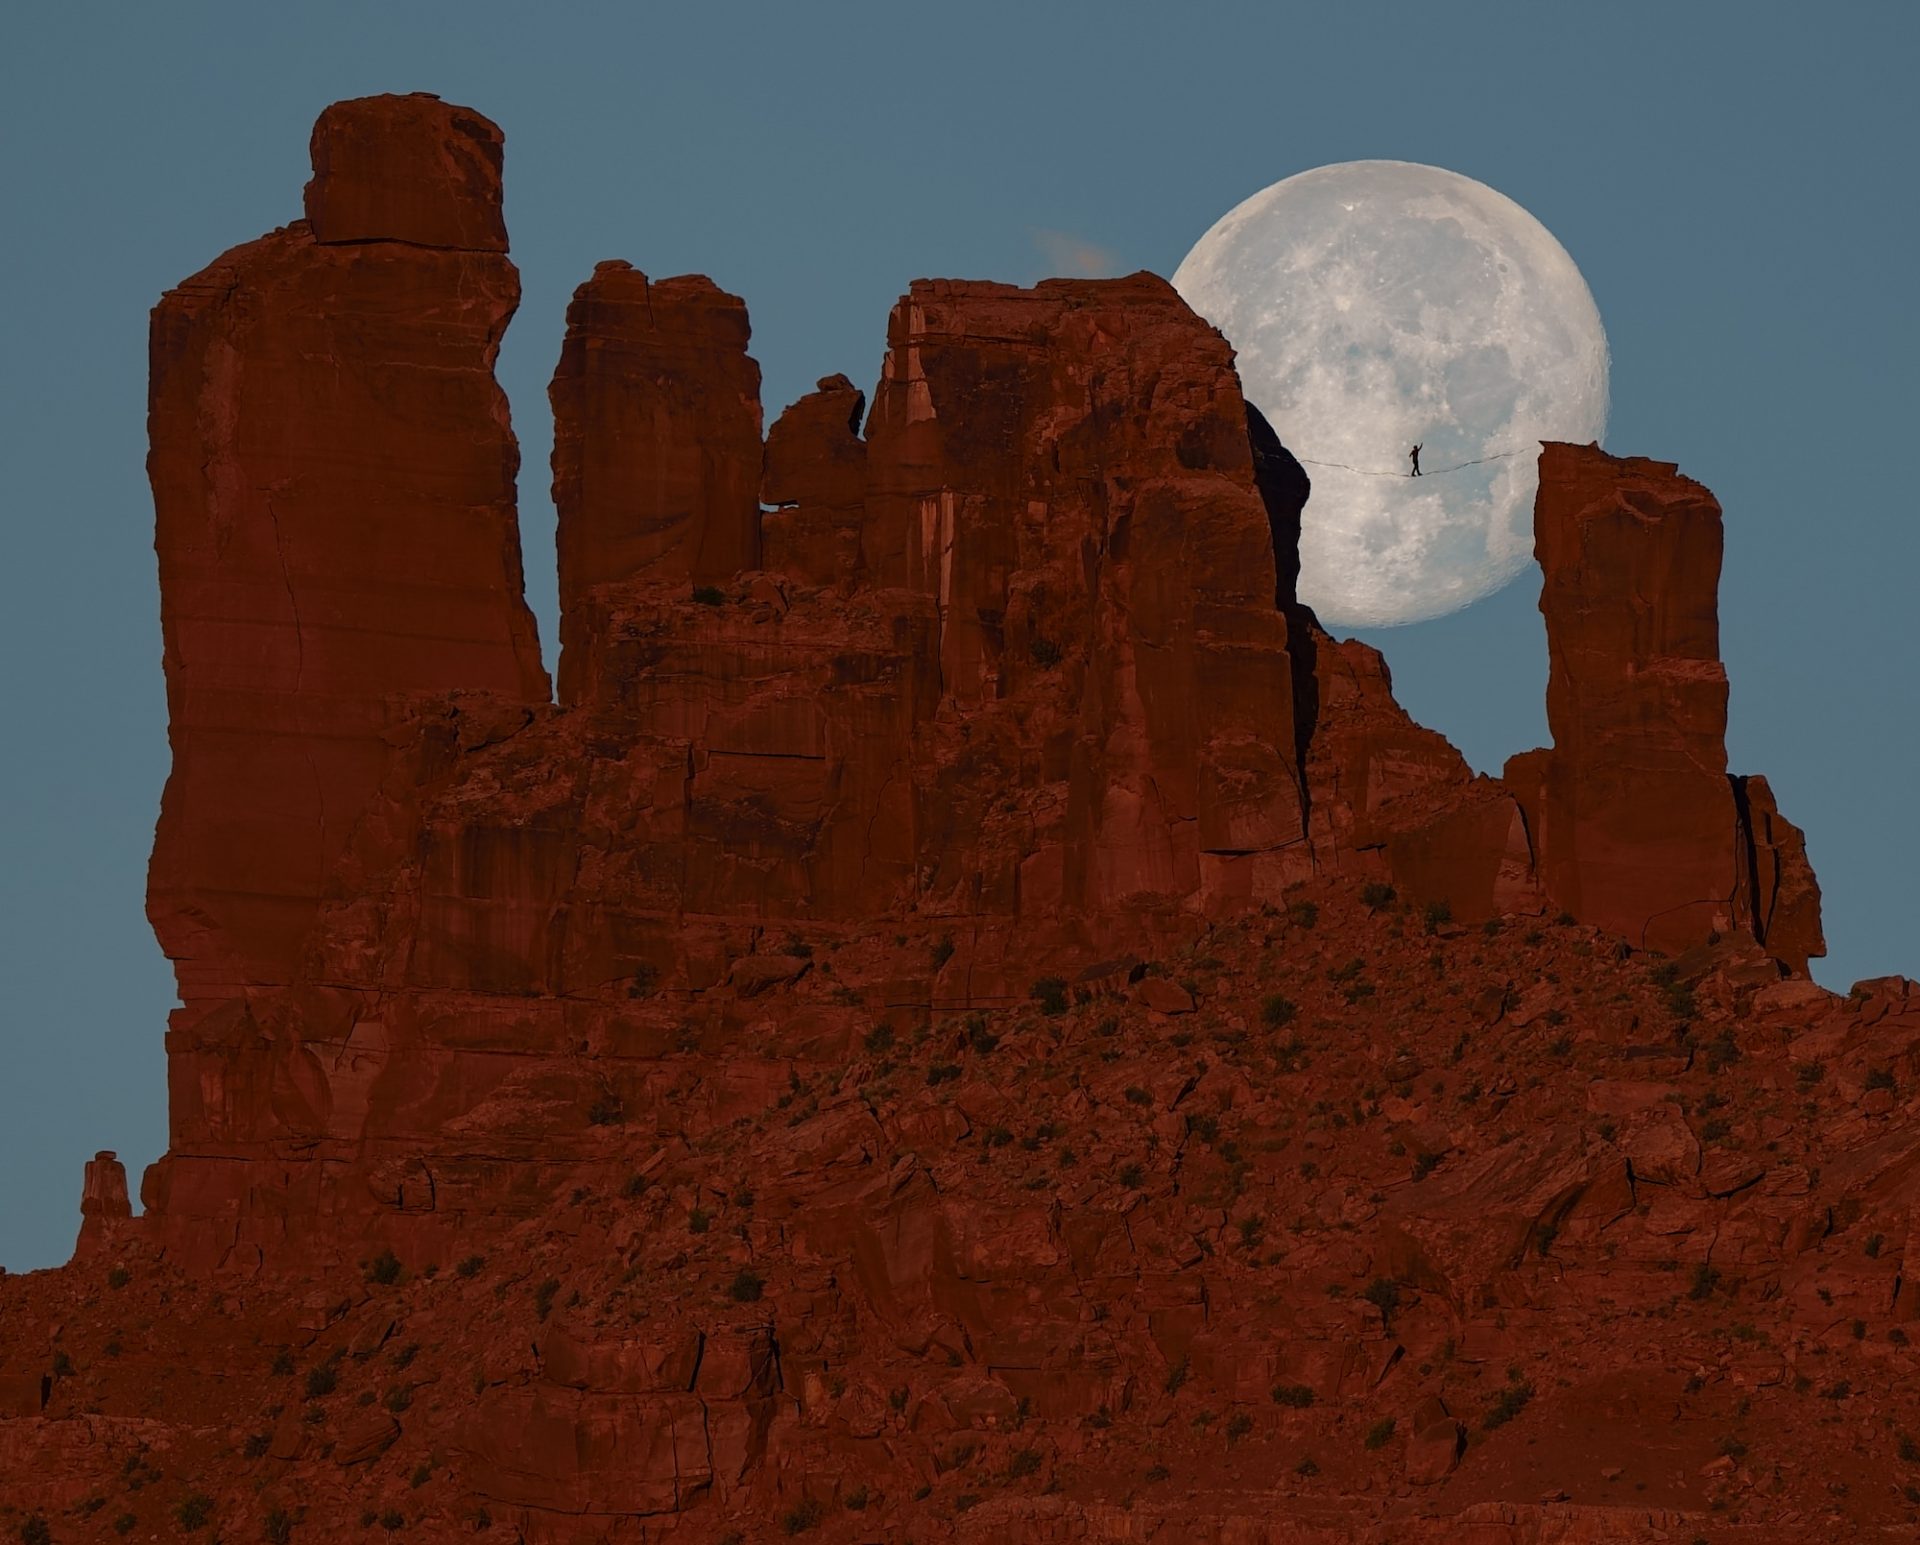 Bộ ảnh đi dây trên cao cùng với Mặt Trăng: “...như có tầm nhìn đêm với a7S III” từ NAG Renan Ozturk